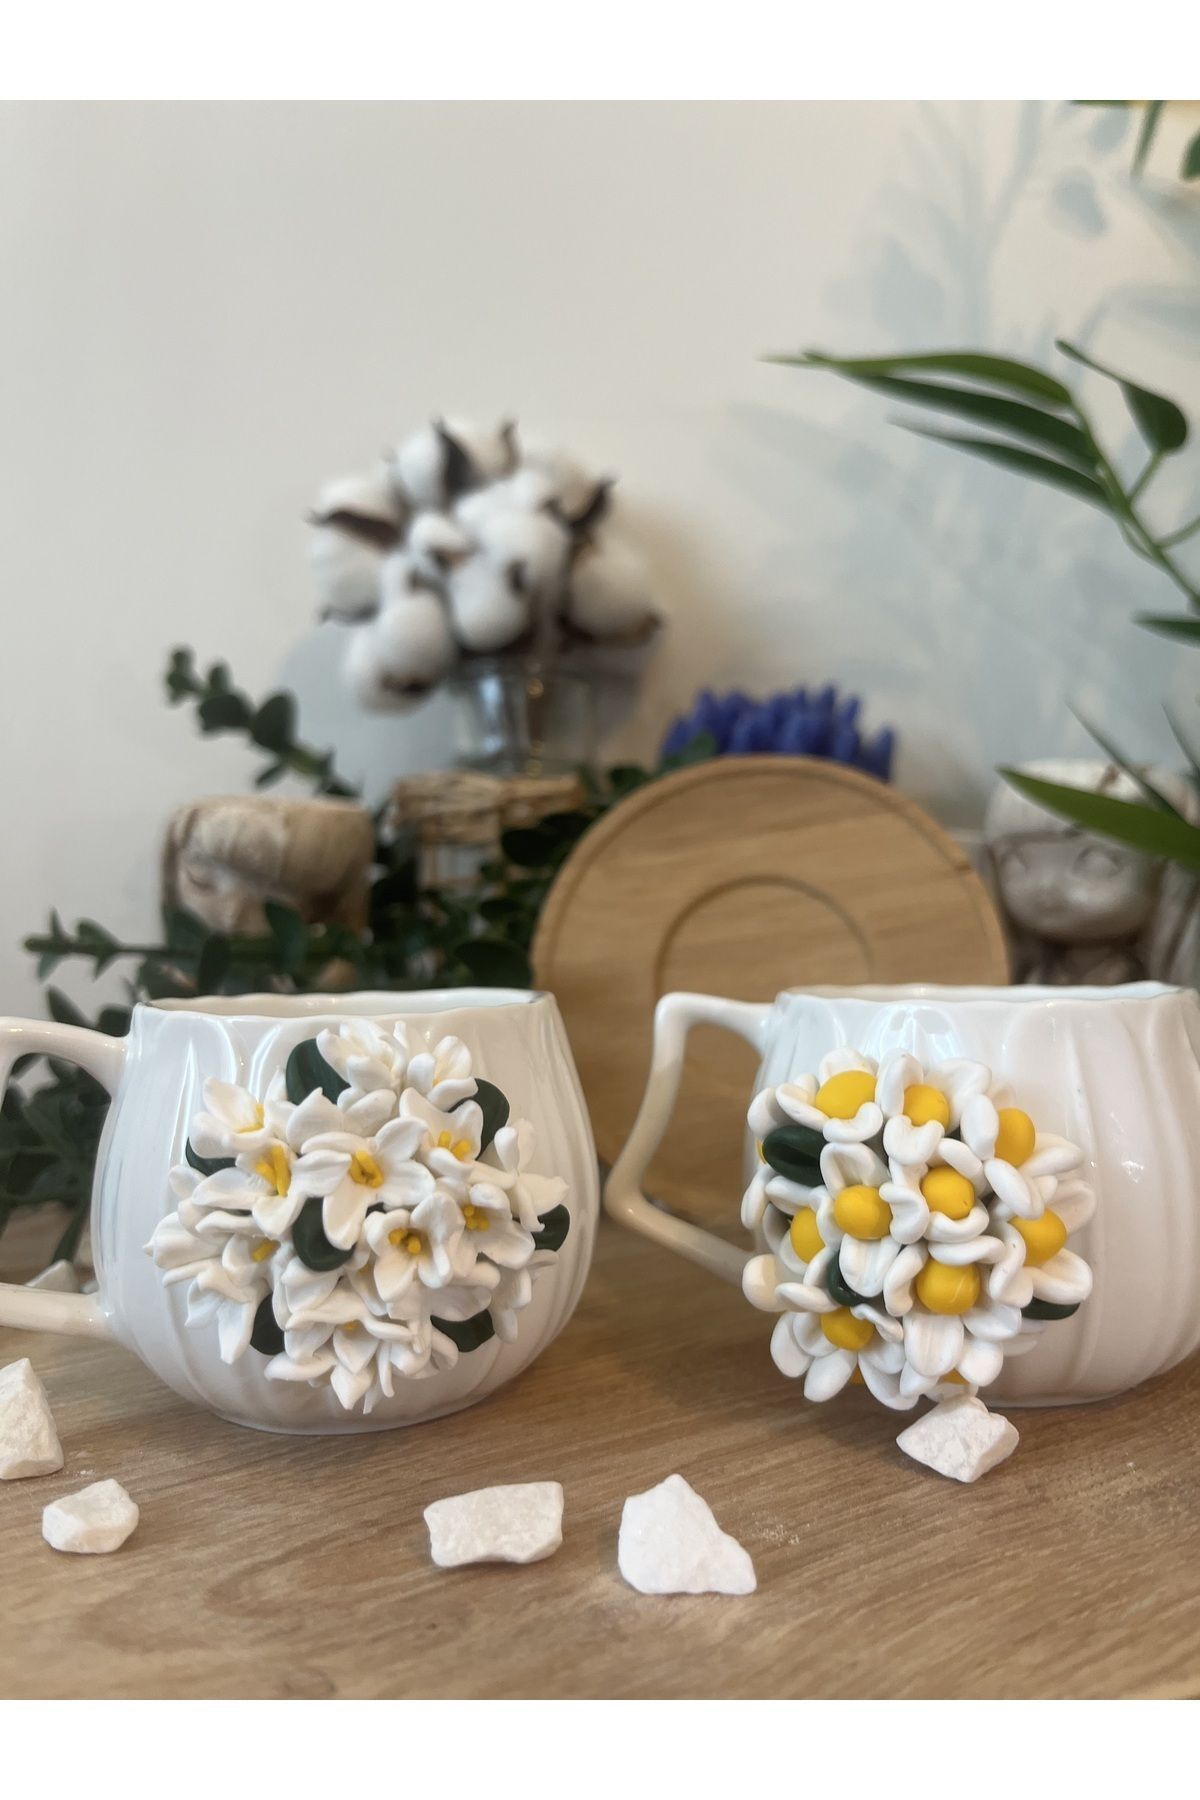 Niveis Ikili Kişiye Özel El Yapımı Tasarım Yasemin & Papatya Çiçekli Desenli Hediyelik Porselen fincan seti